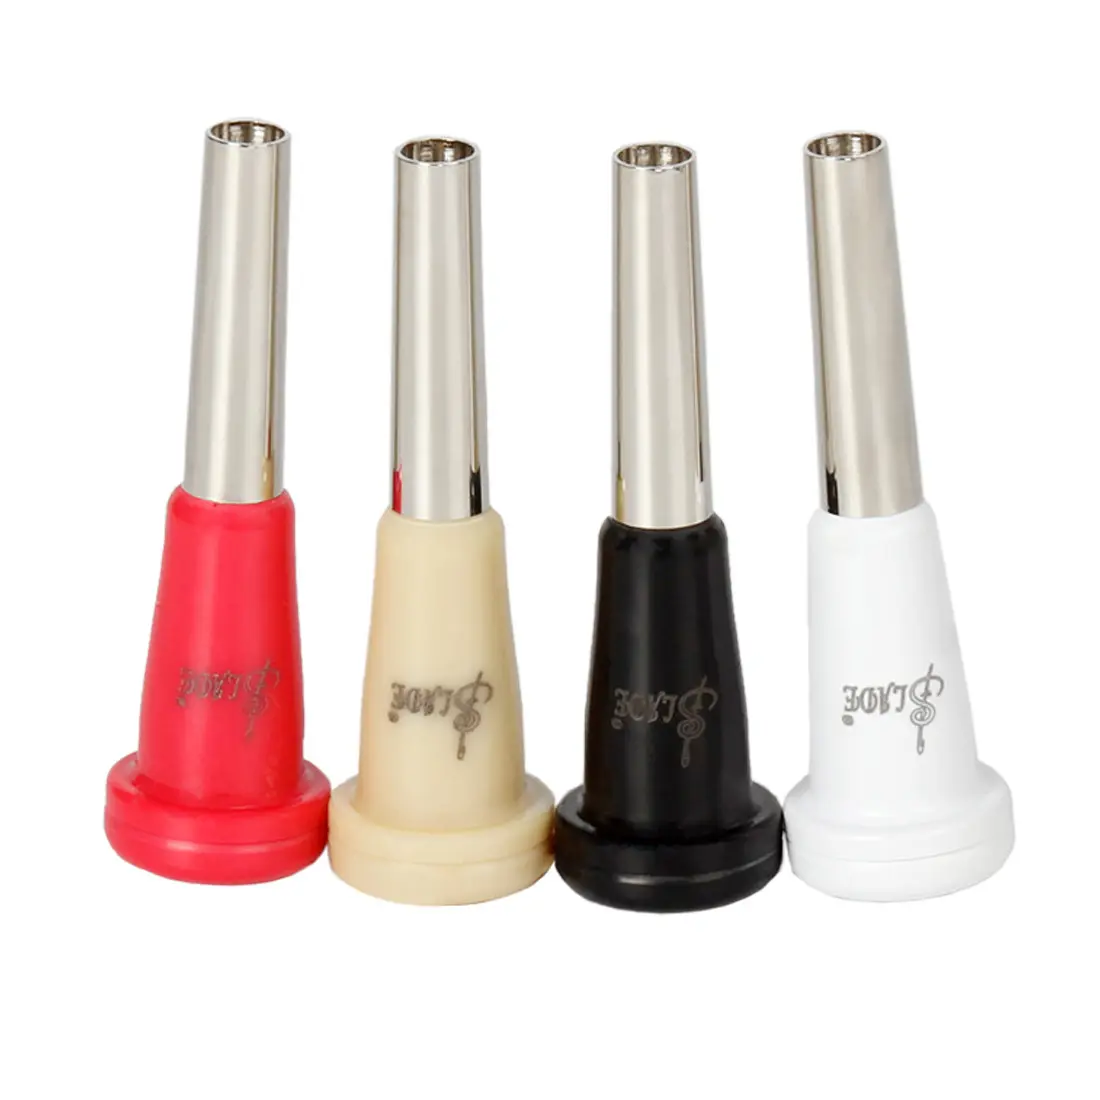 Fabriek Best Verkopende Trompet Mond 7c Metalen Abs Nozzle Trompet Instrument Accessoires Groothandel